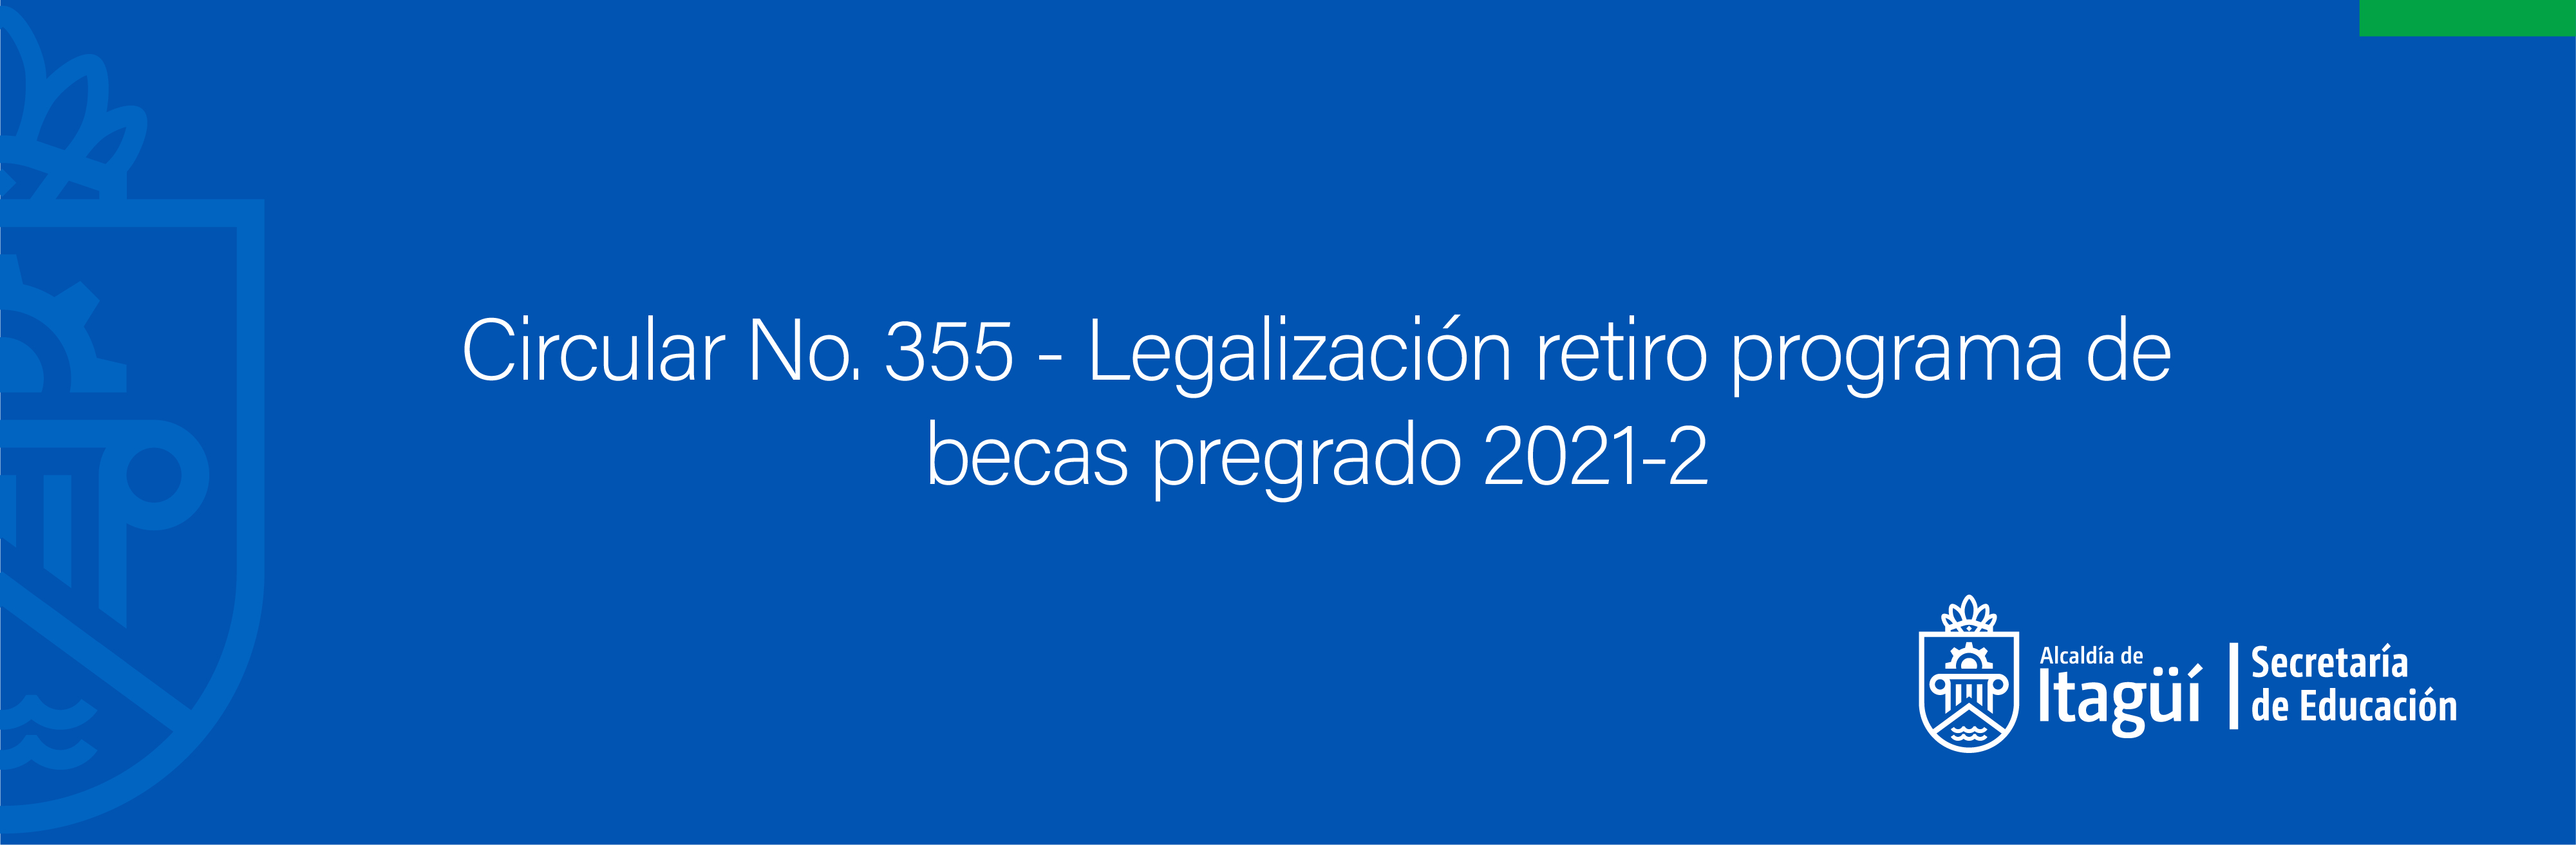 Circular No. 355 - Legalización retiro programa de becas pregrado 2021-2